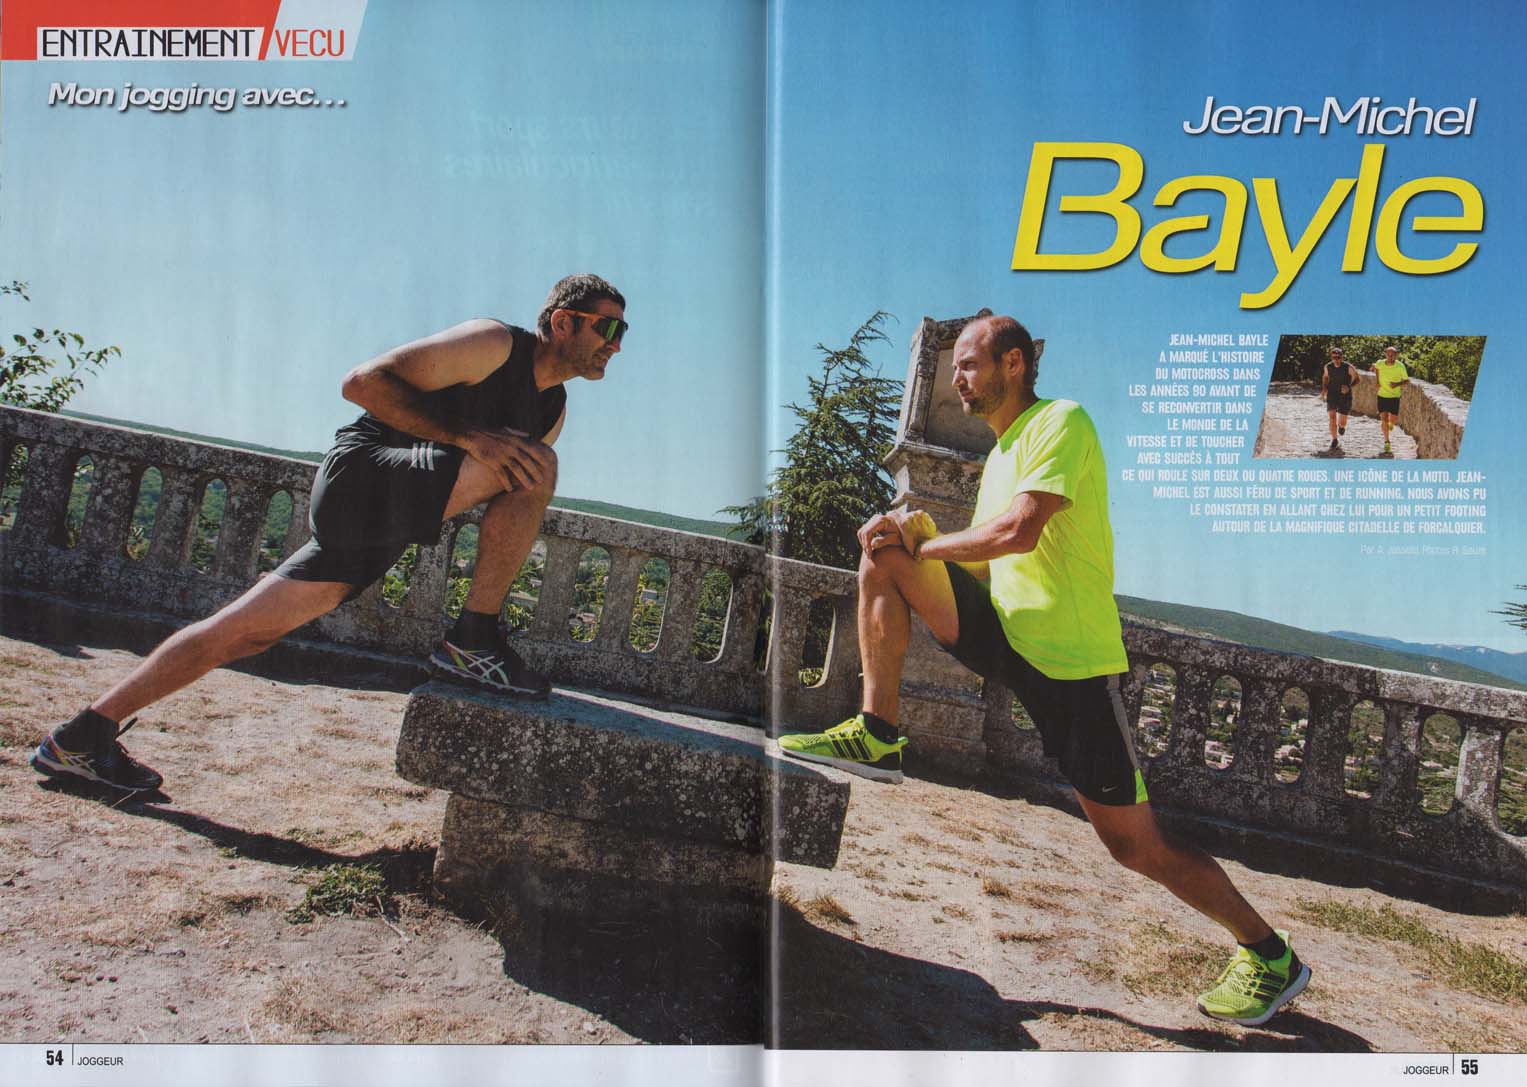 JMB dans le magazine  joggeur d'octobre 2015